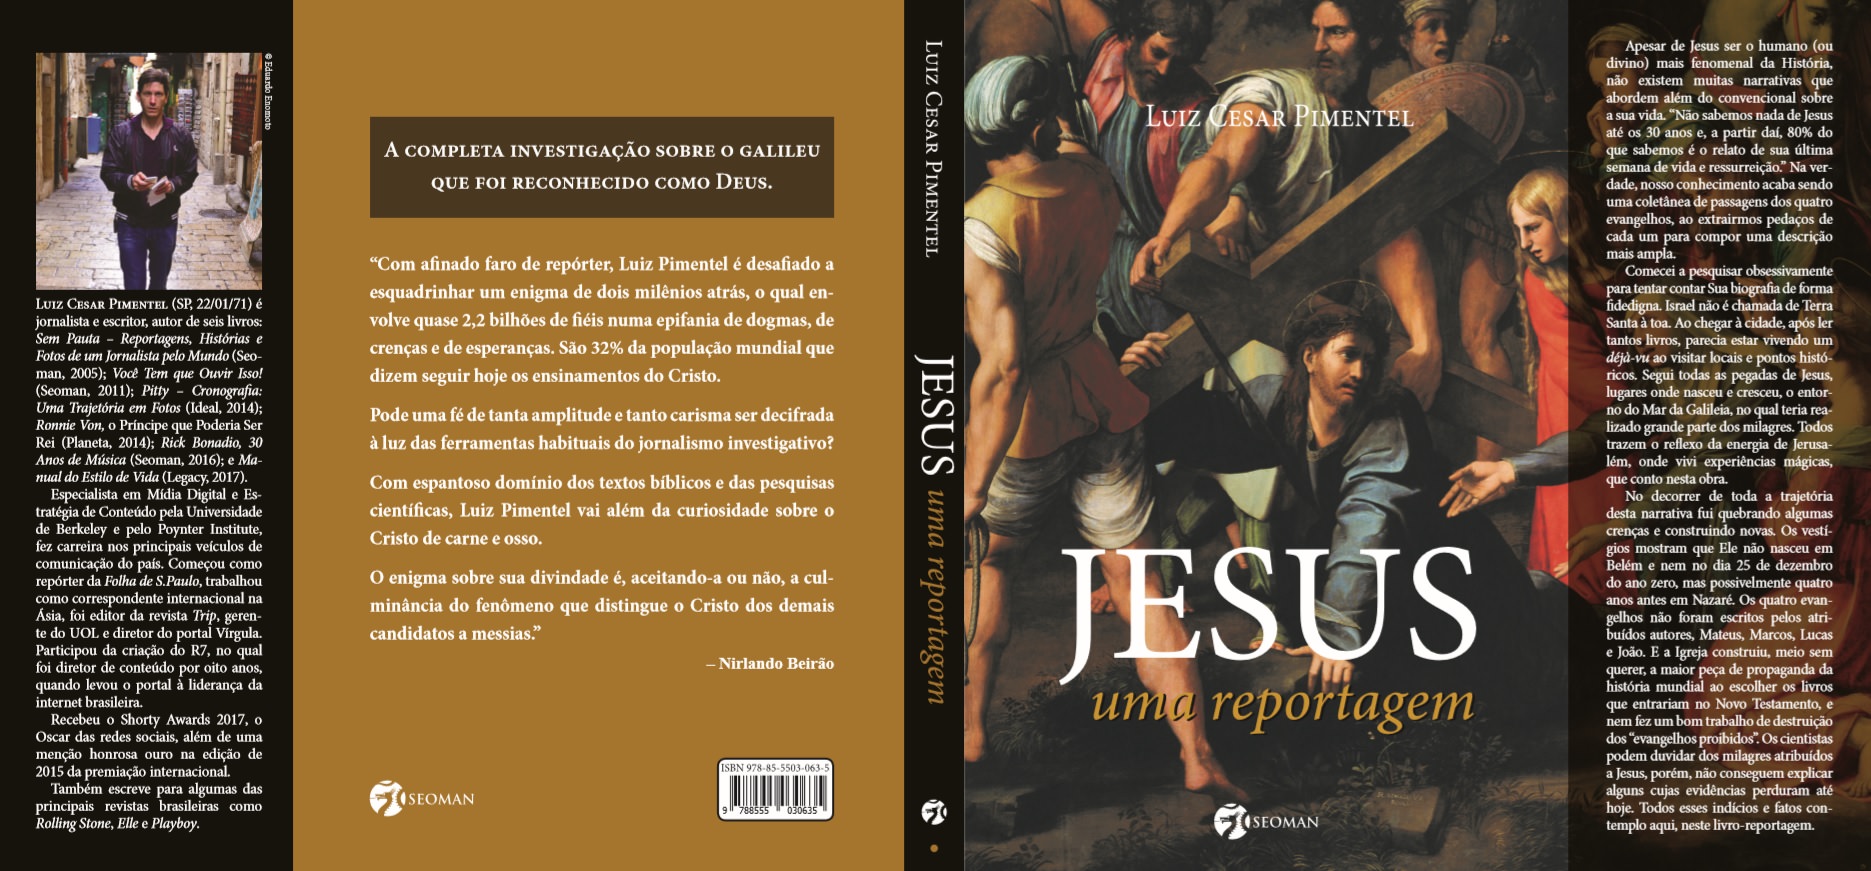 Libro "Jesús, Un Reportaje "Luiz Cesar Pimentel, cubierta. Fotos: Prensa de MF Global.